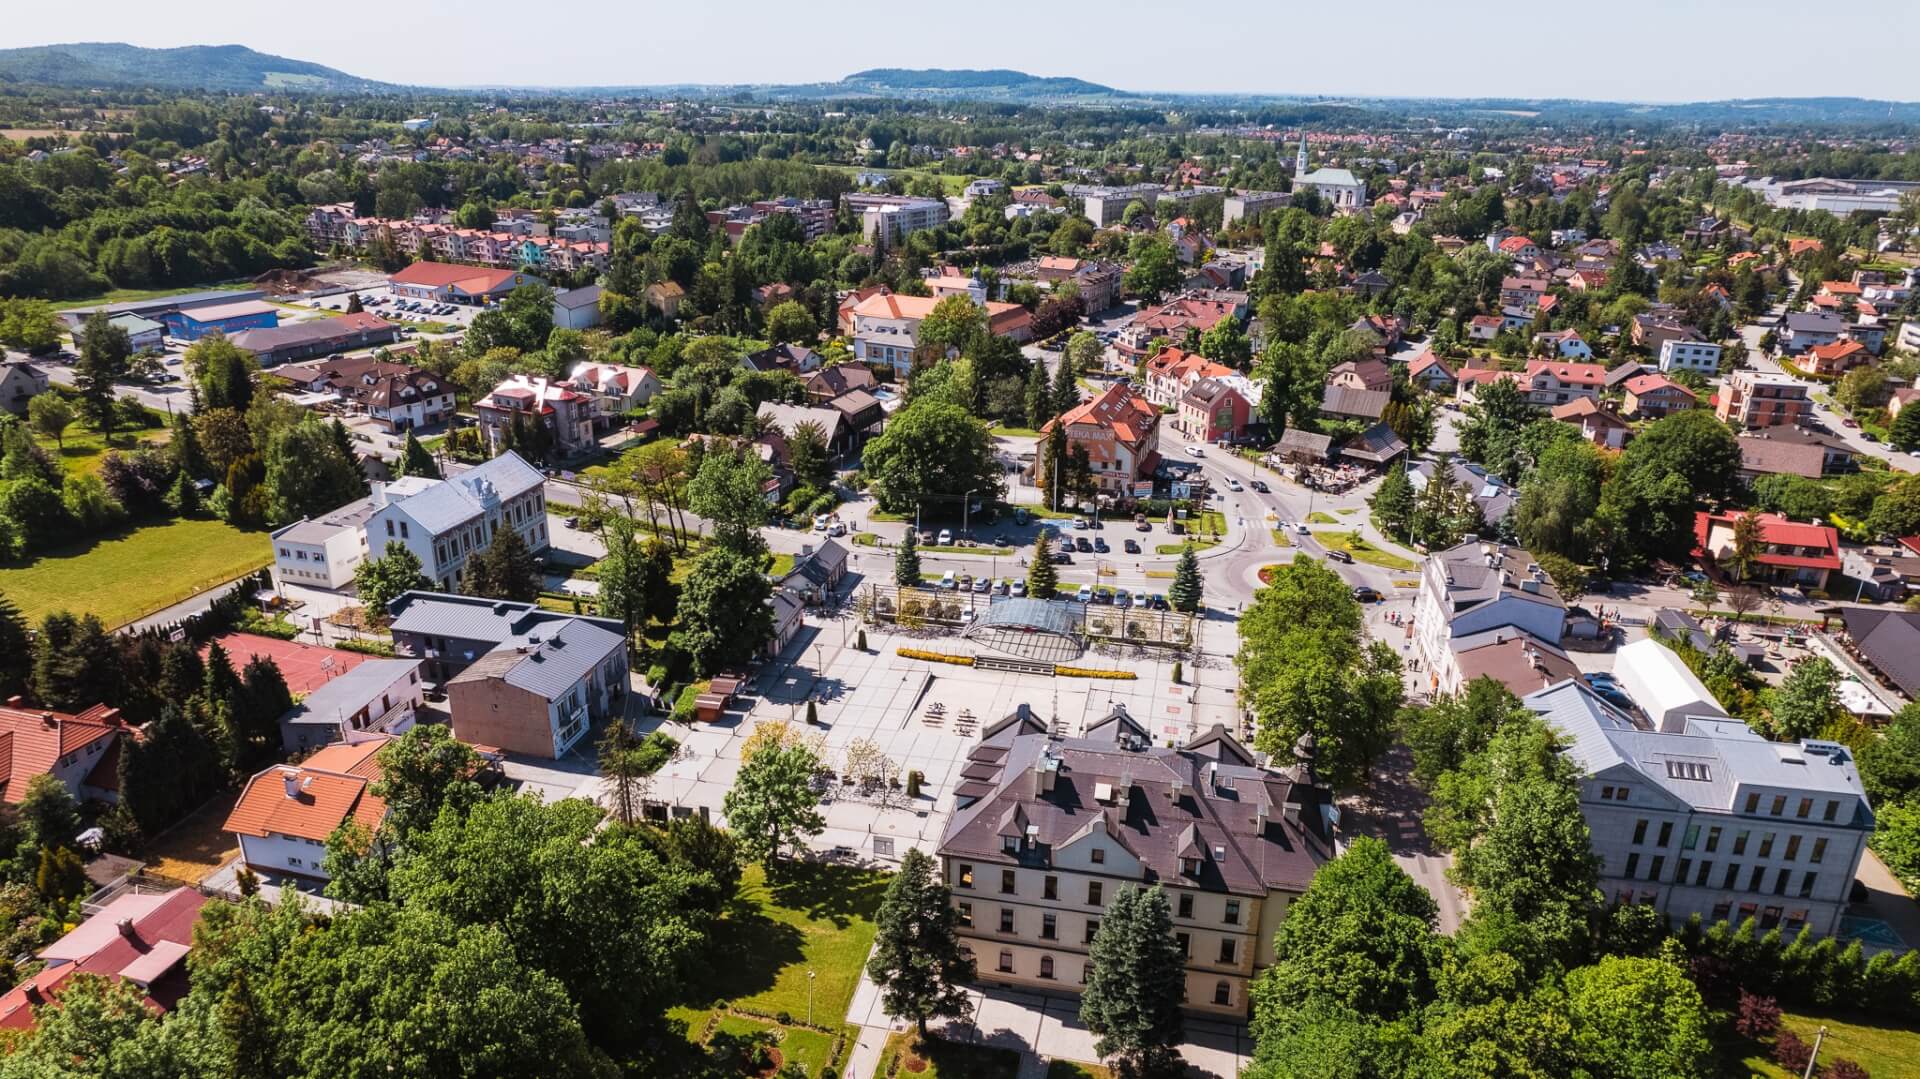 Ustroń to jedna z najpopularniejszych miejscowości wypoczynkowych Śląska i Beskidów